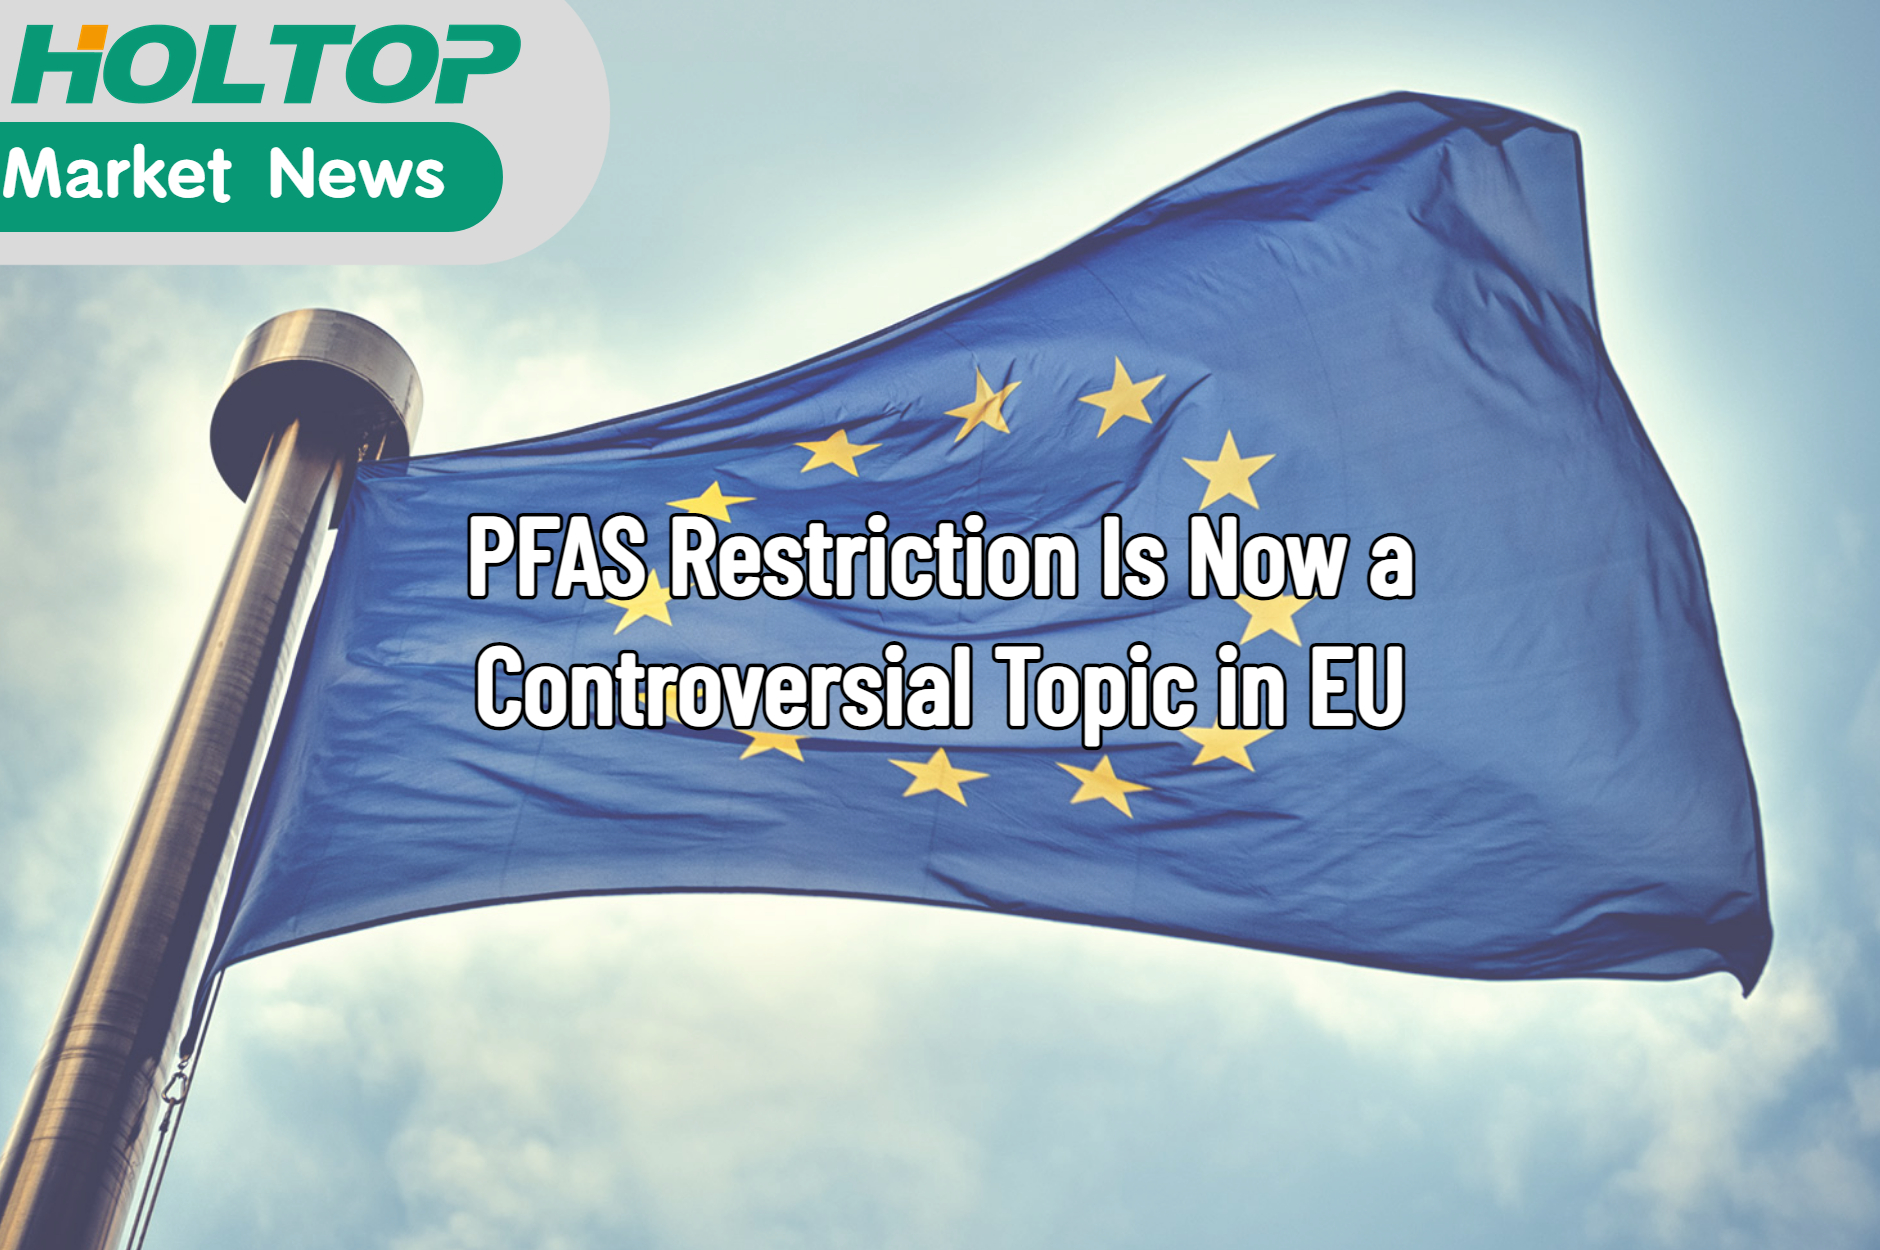 A restrição do PFAS agora é um tópico controverso na UE